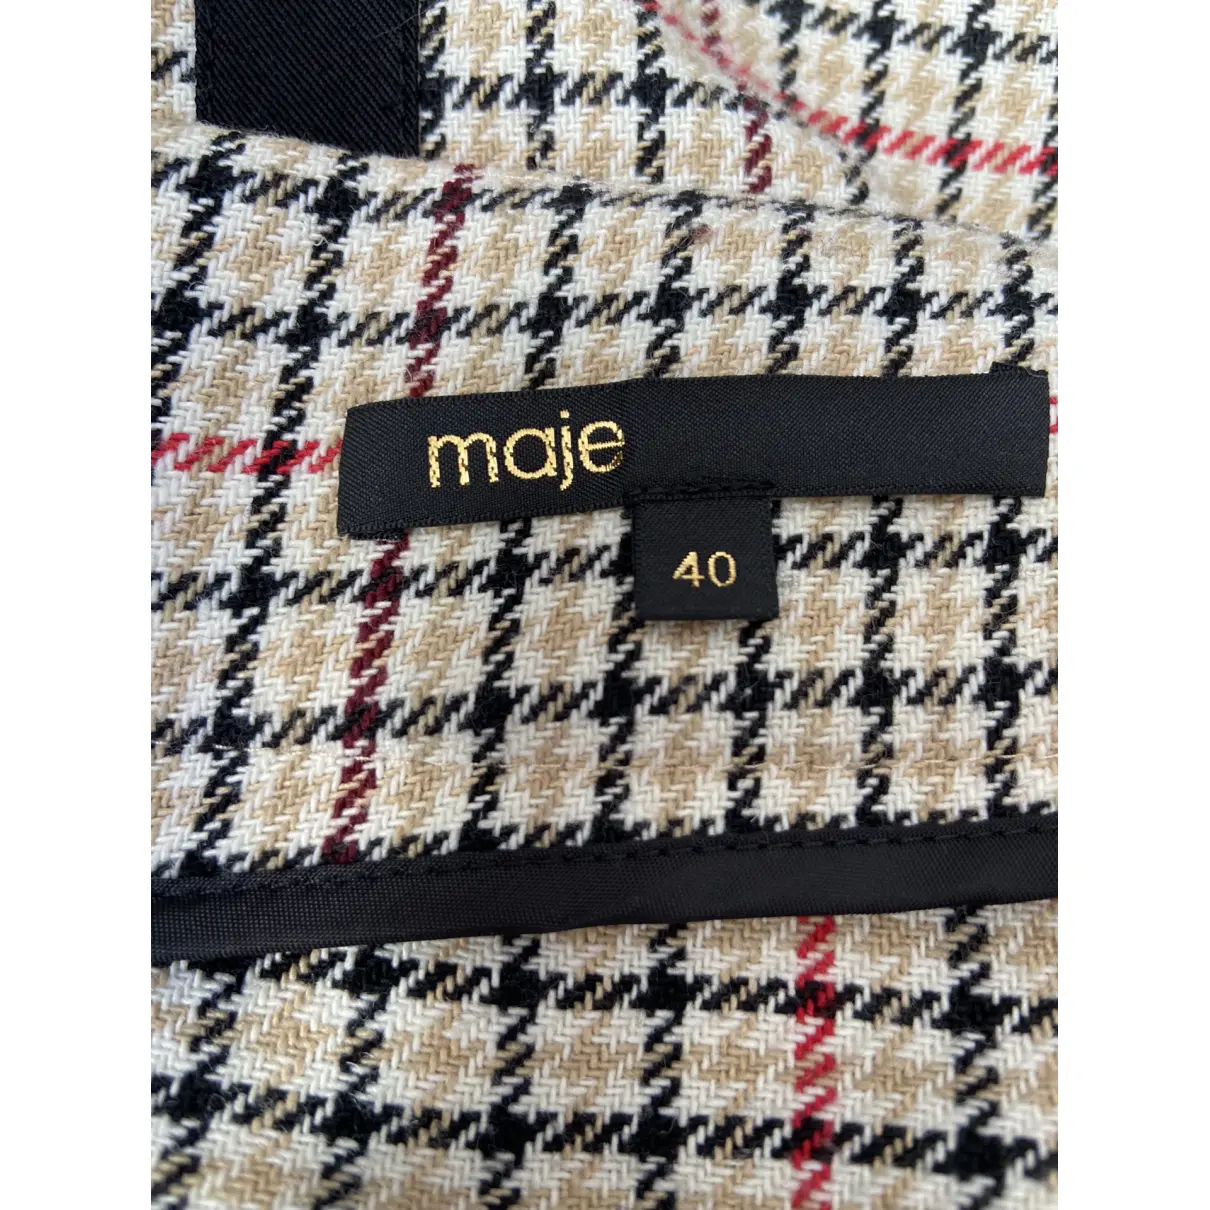 Buy Maje Fall Winter 2019 mid-length skirt online